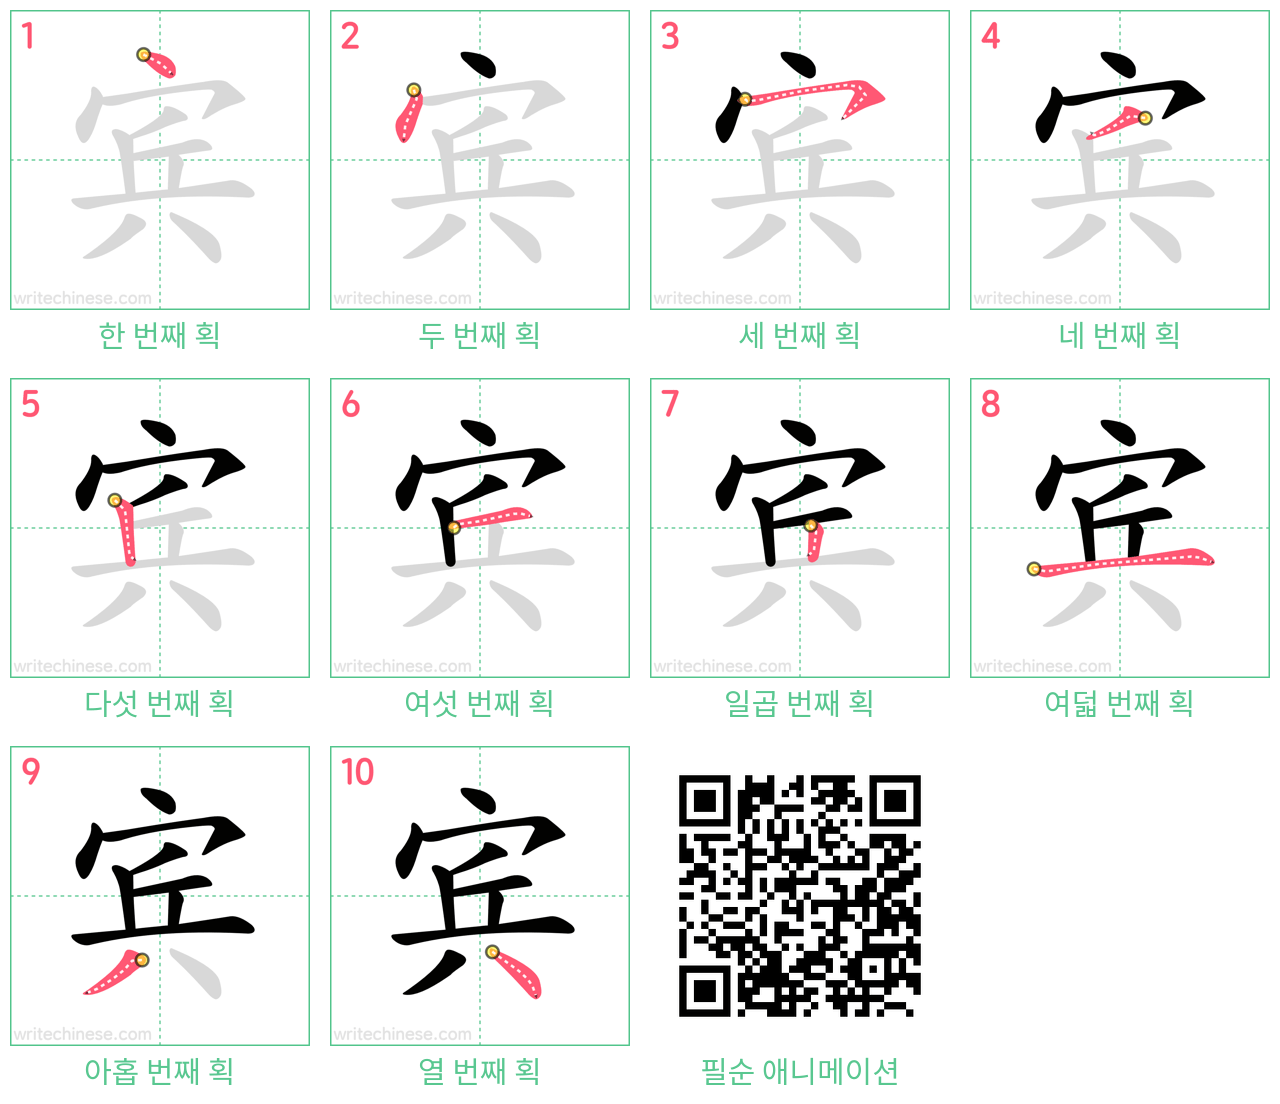 宾 step-by-step stroke order diagrams